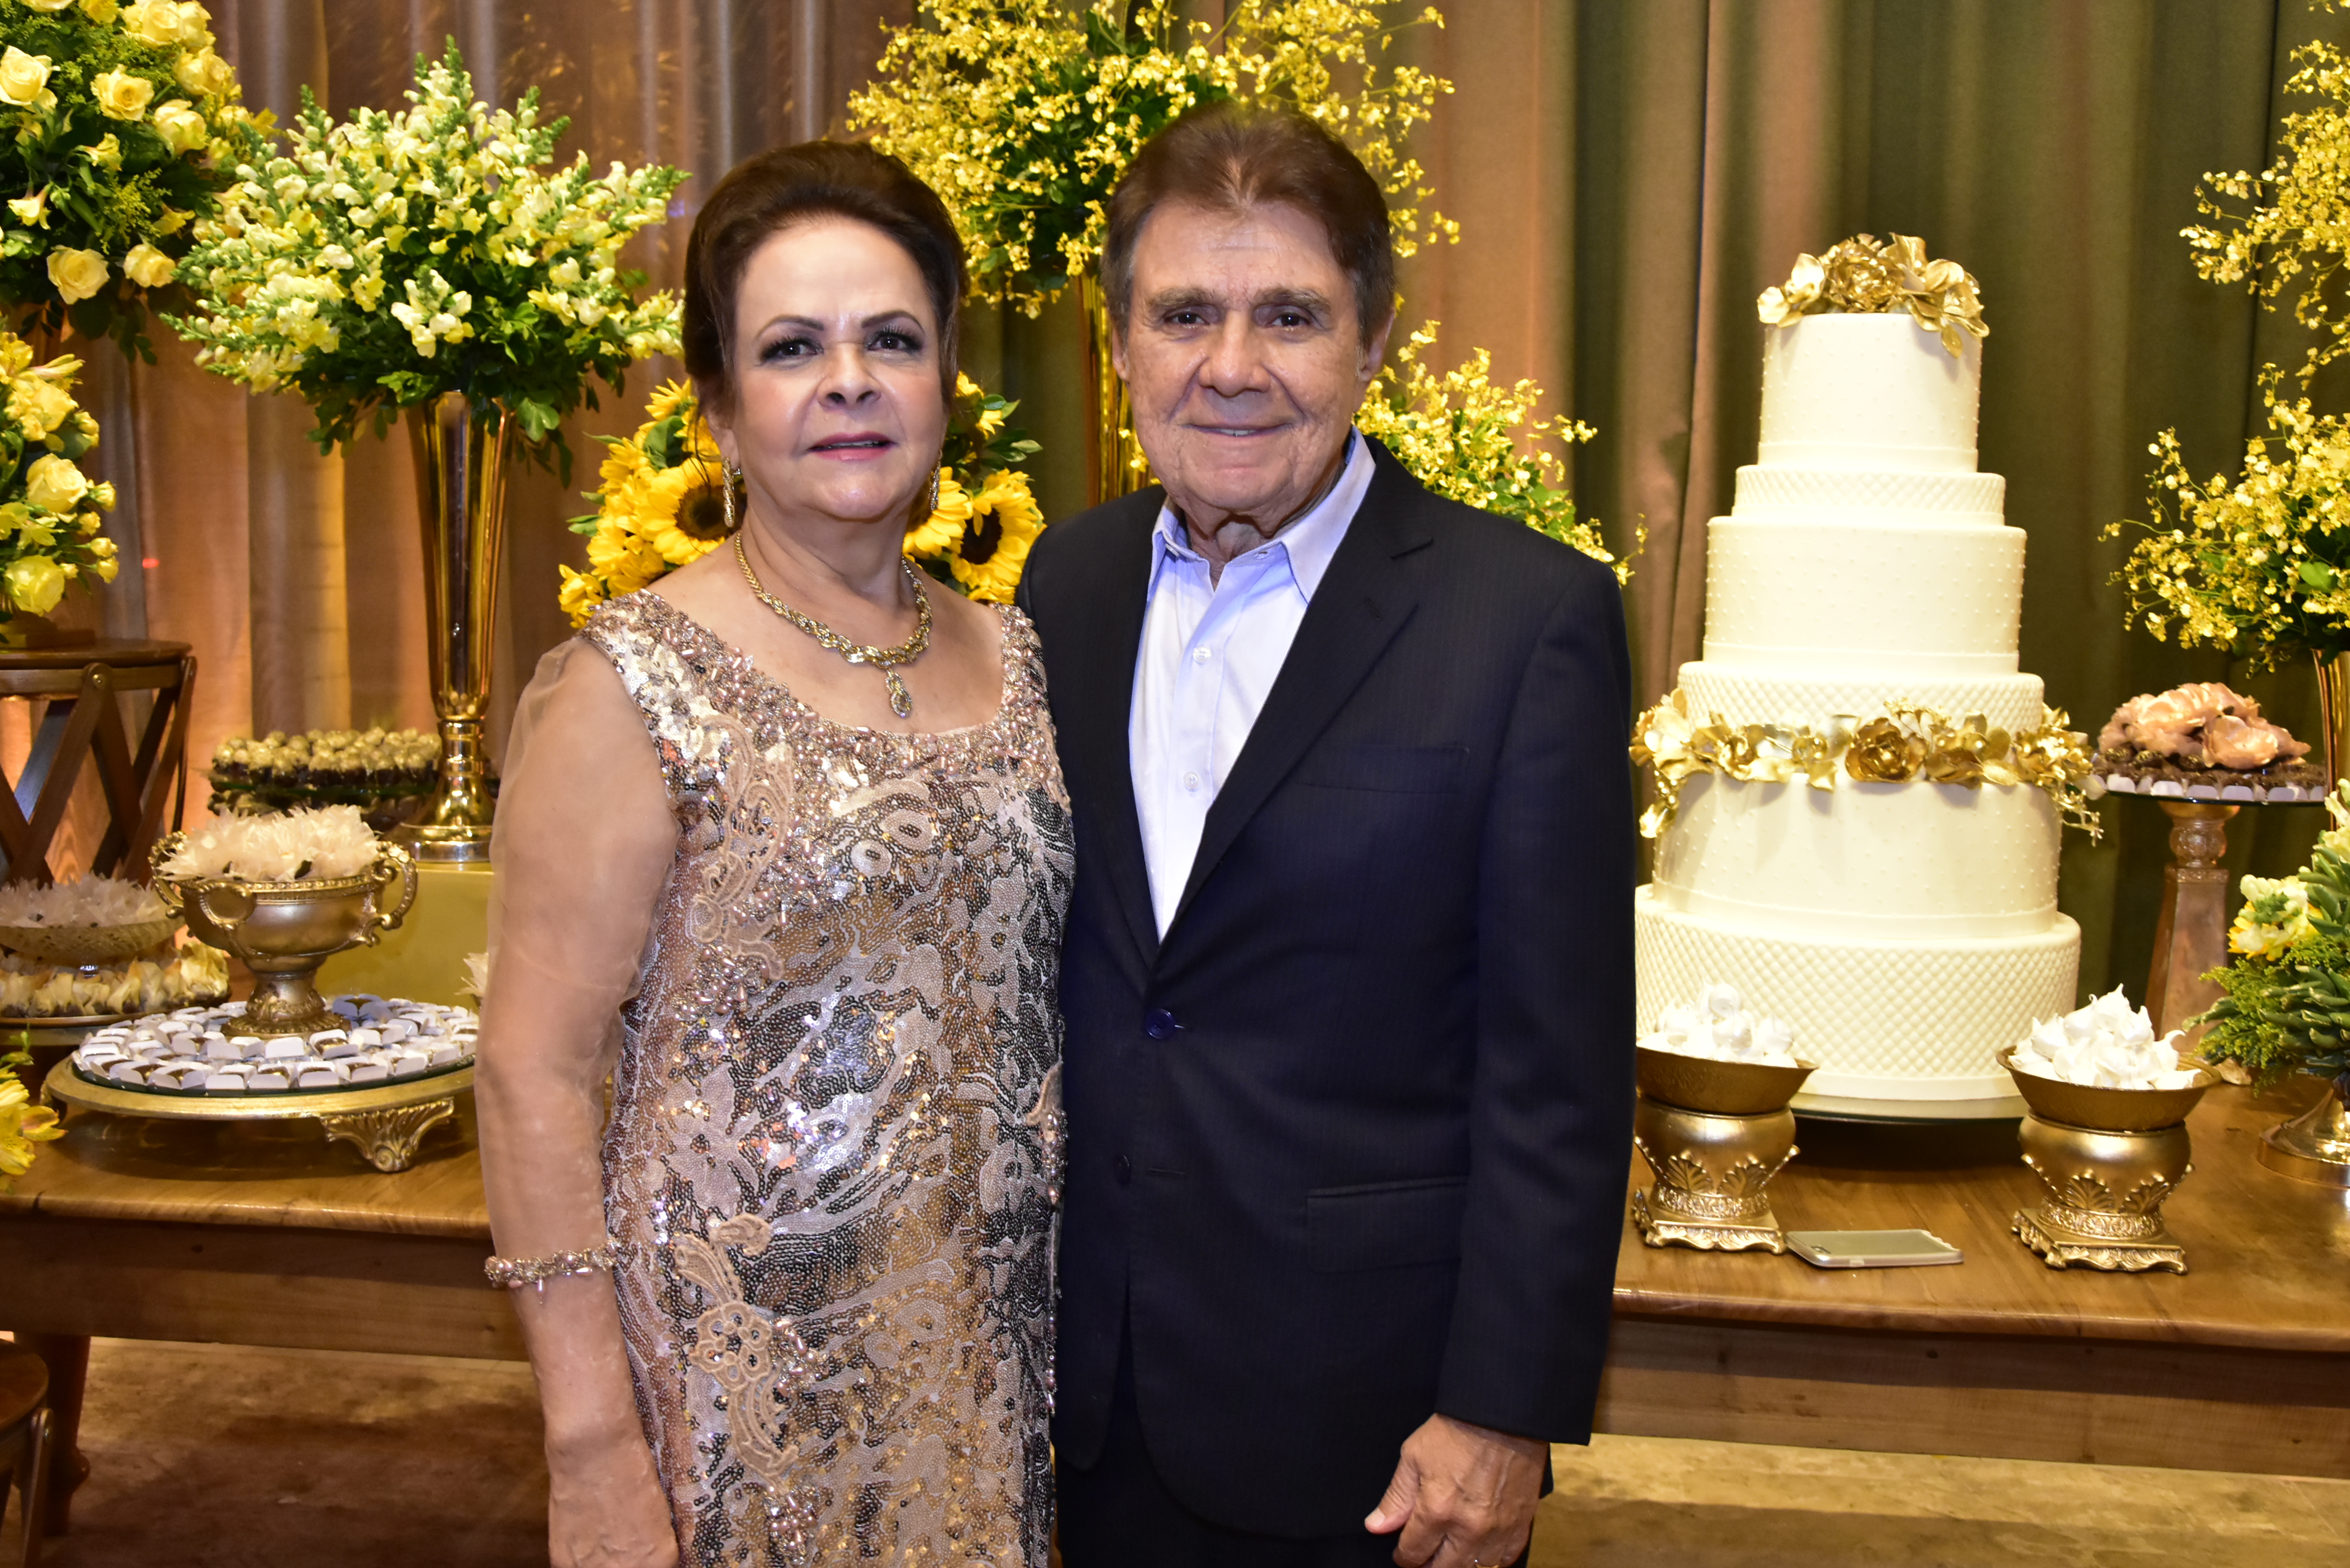 Jorge e Nadja Parente celebram suas bodas de ouro e uma trajetória de amor